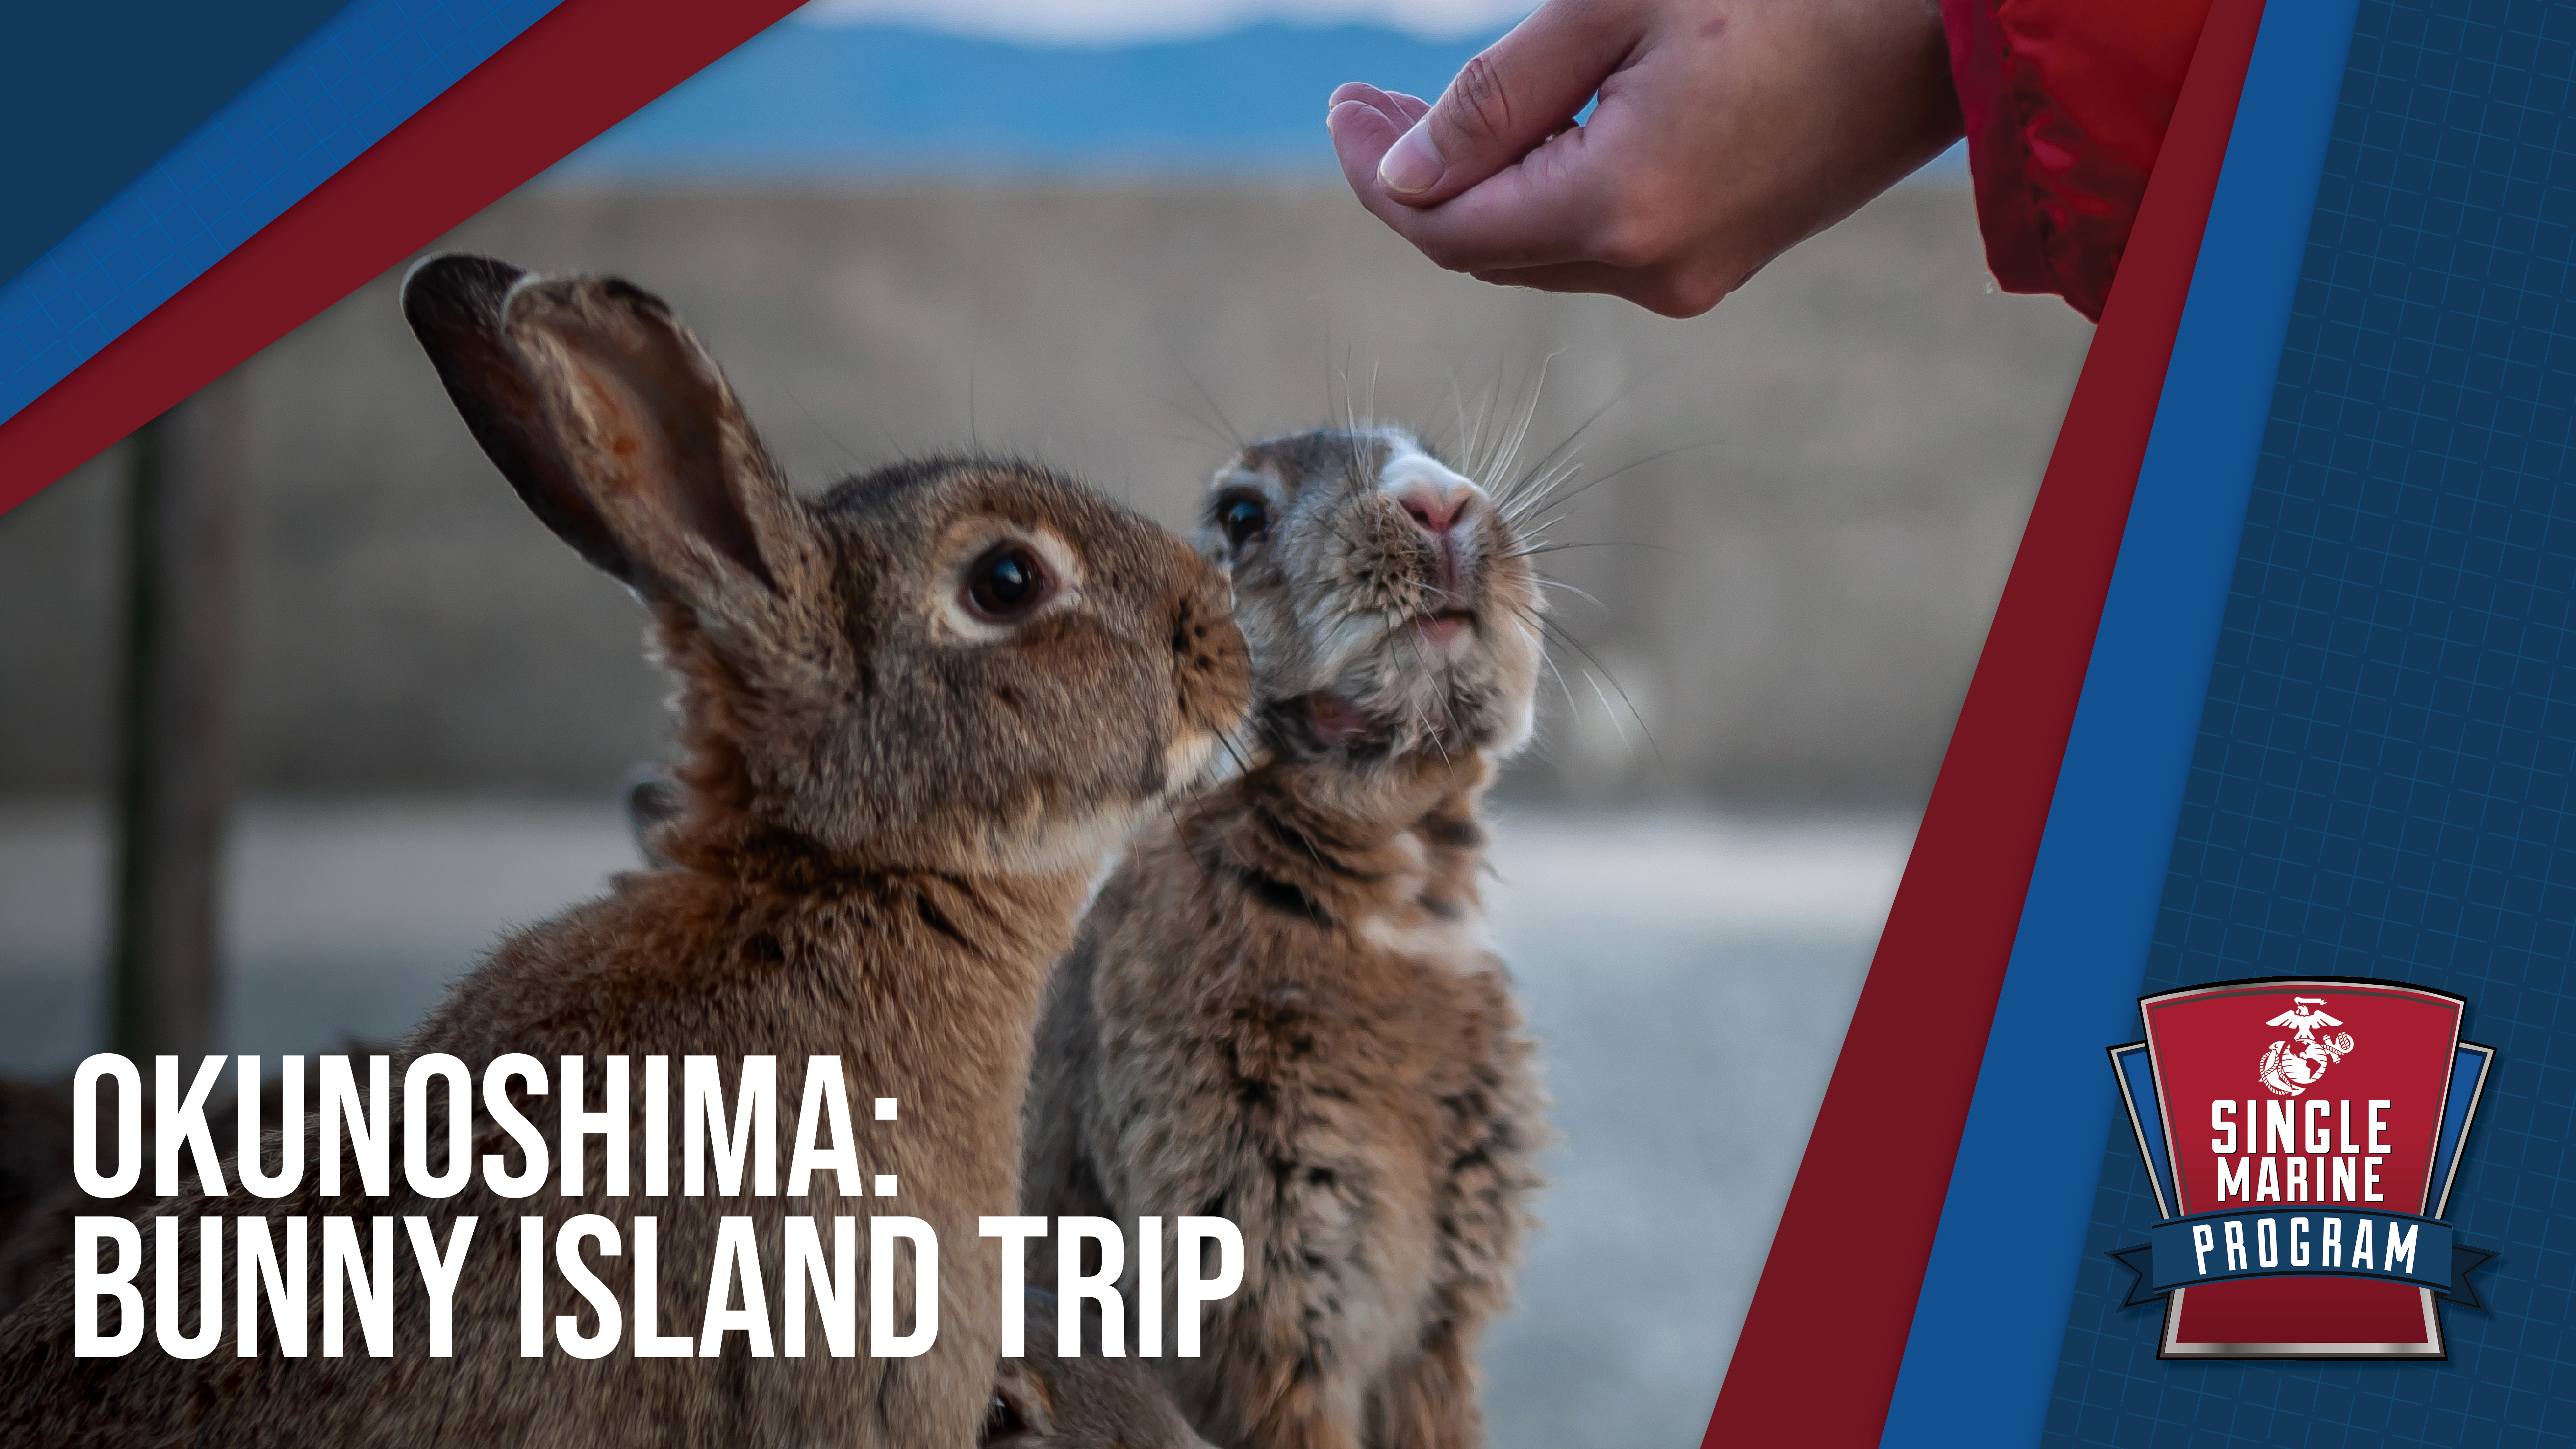 SMP - Bunny Island Trip